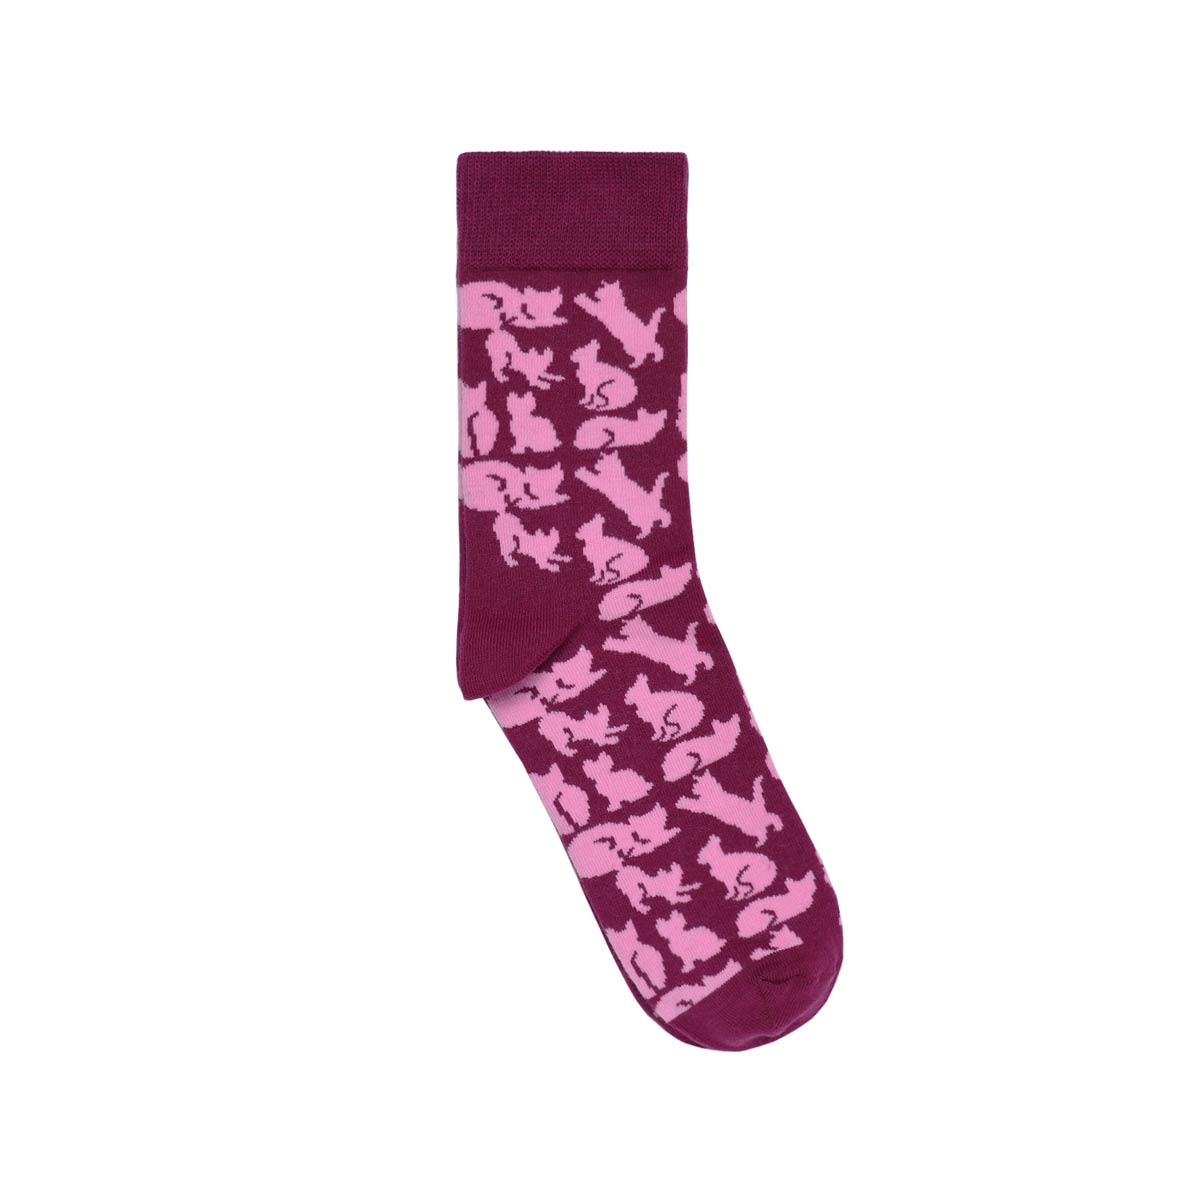 CH-00733-A12-chaussettes femme-fantaisie-chats-violet-35-39